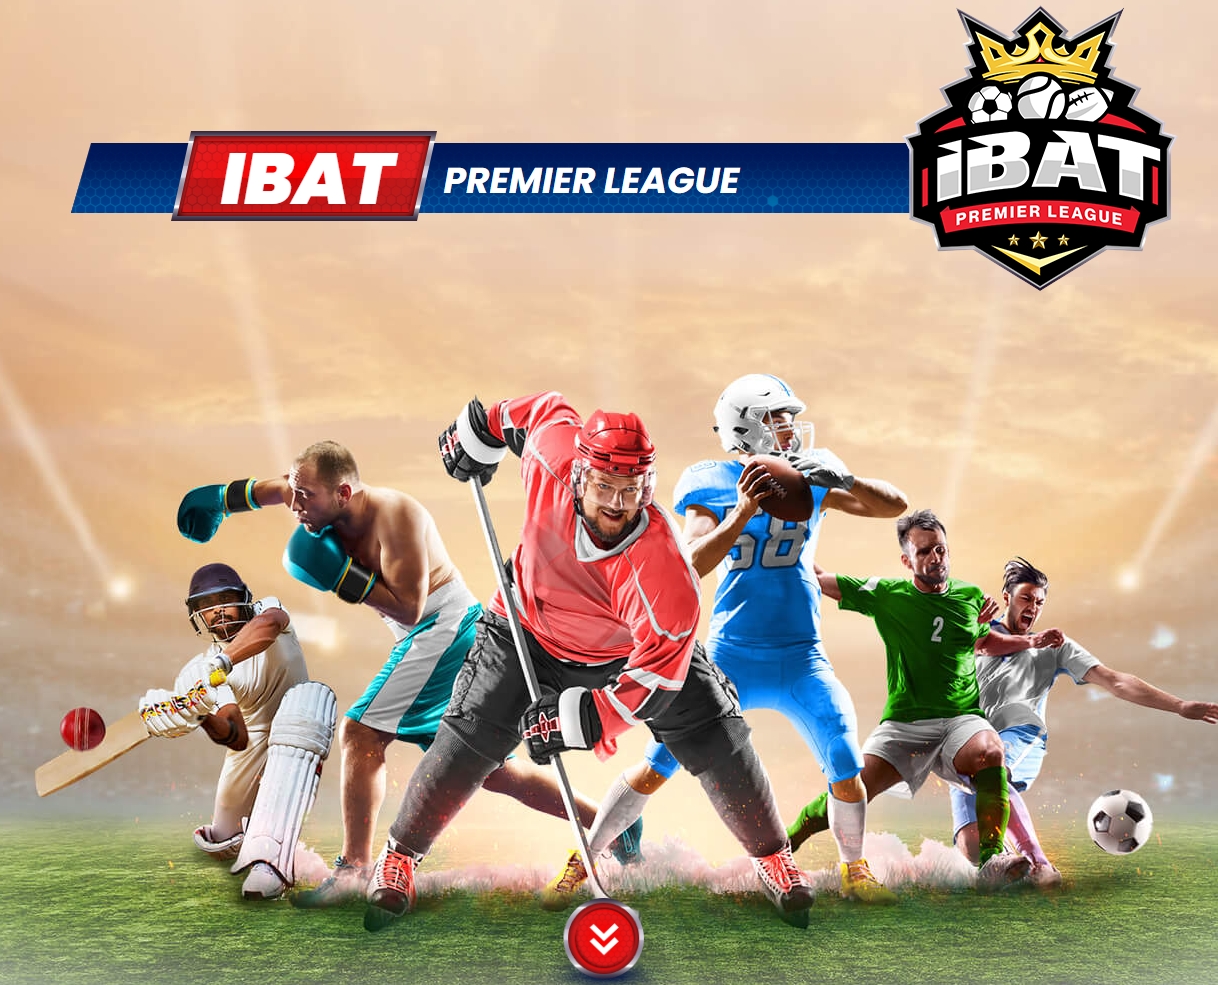 IBAT premier league